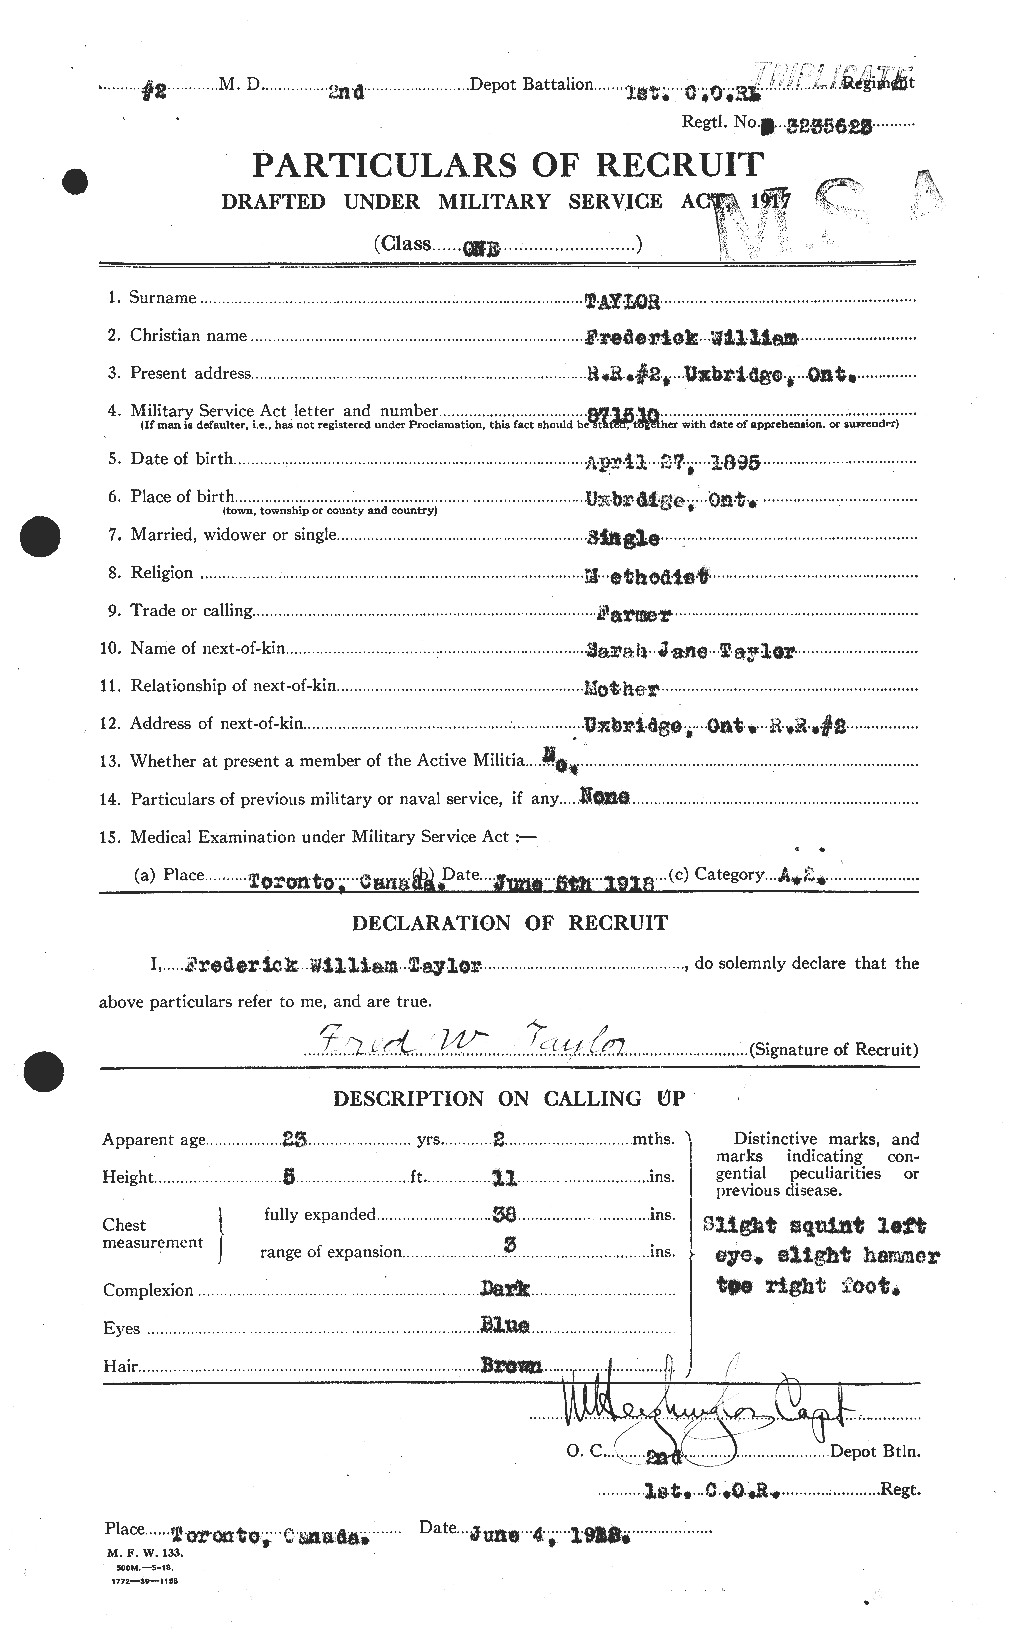 Dossiers du Personnel de la Première Guerre mondiale - CEC 625826a